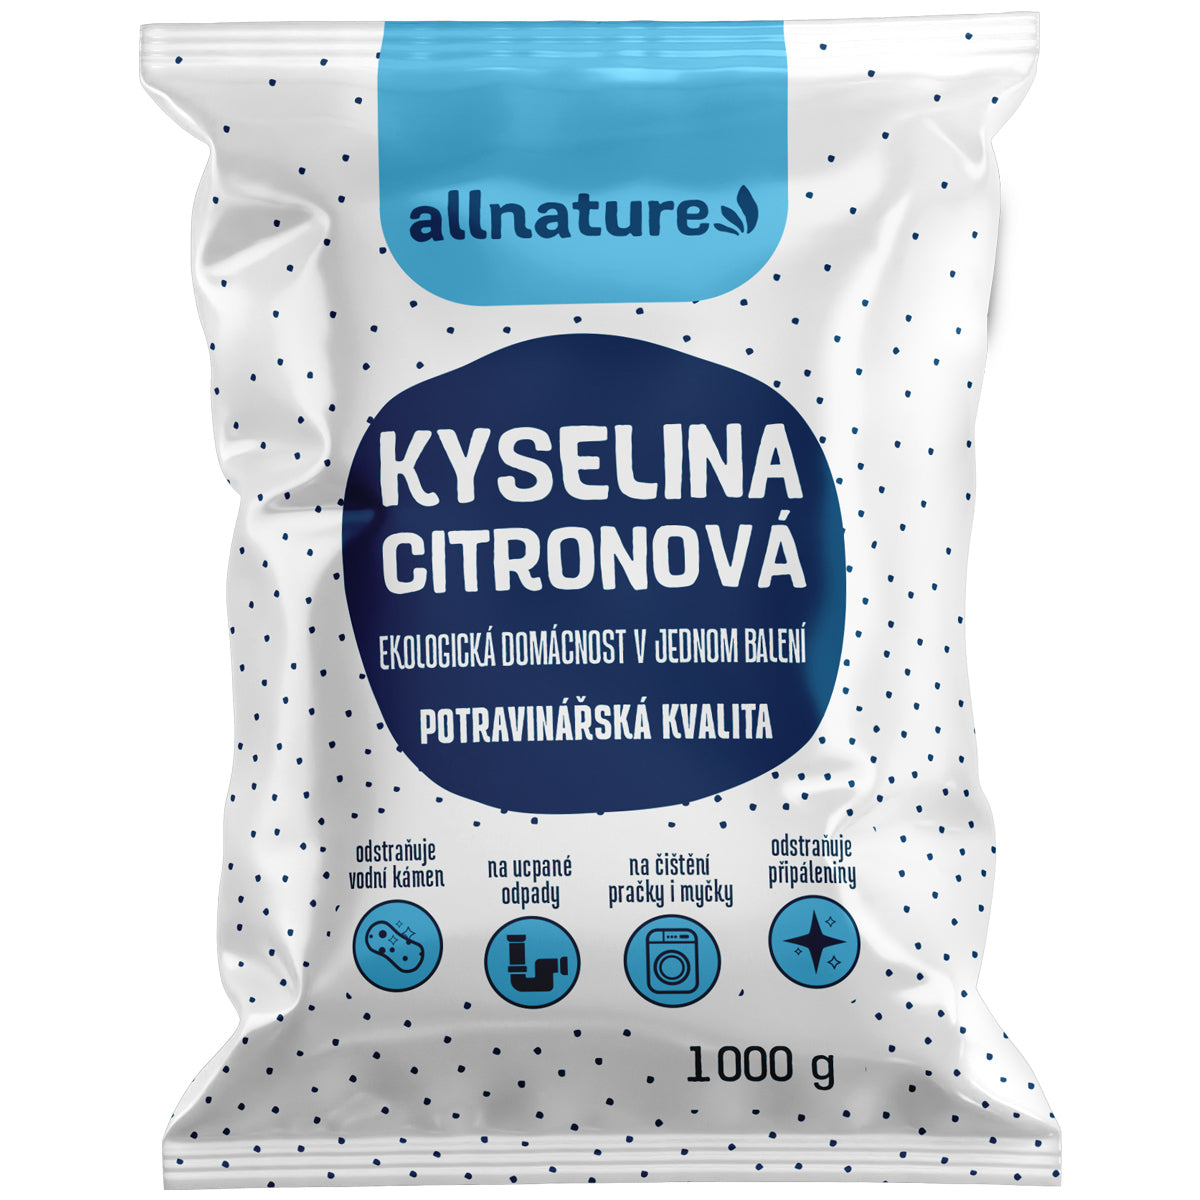 Allnature Kyselina citronová (1 kg) - II. jakost - potravinářská kvalita Allnature